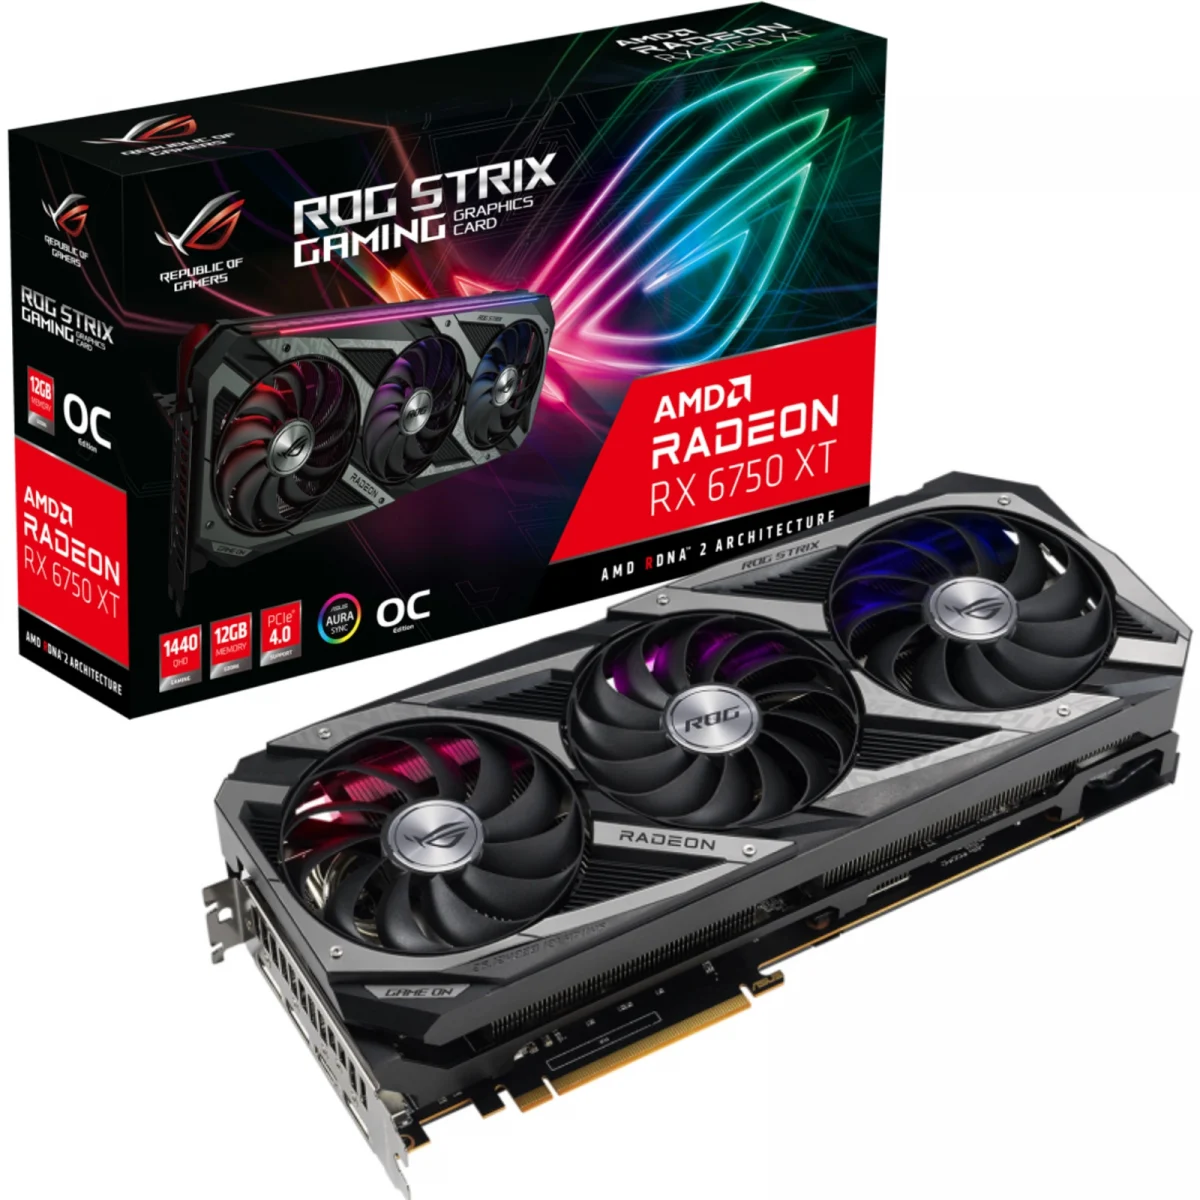 Recensione ASUS ROG Strix AMD Radeon RX 6750XT OC:prezzo,opinioni